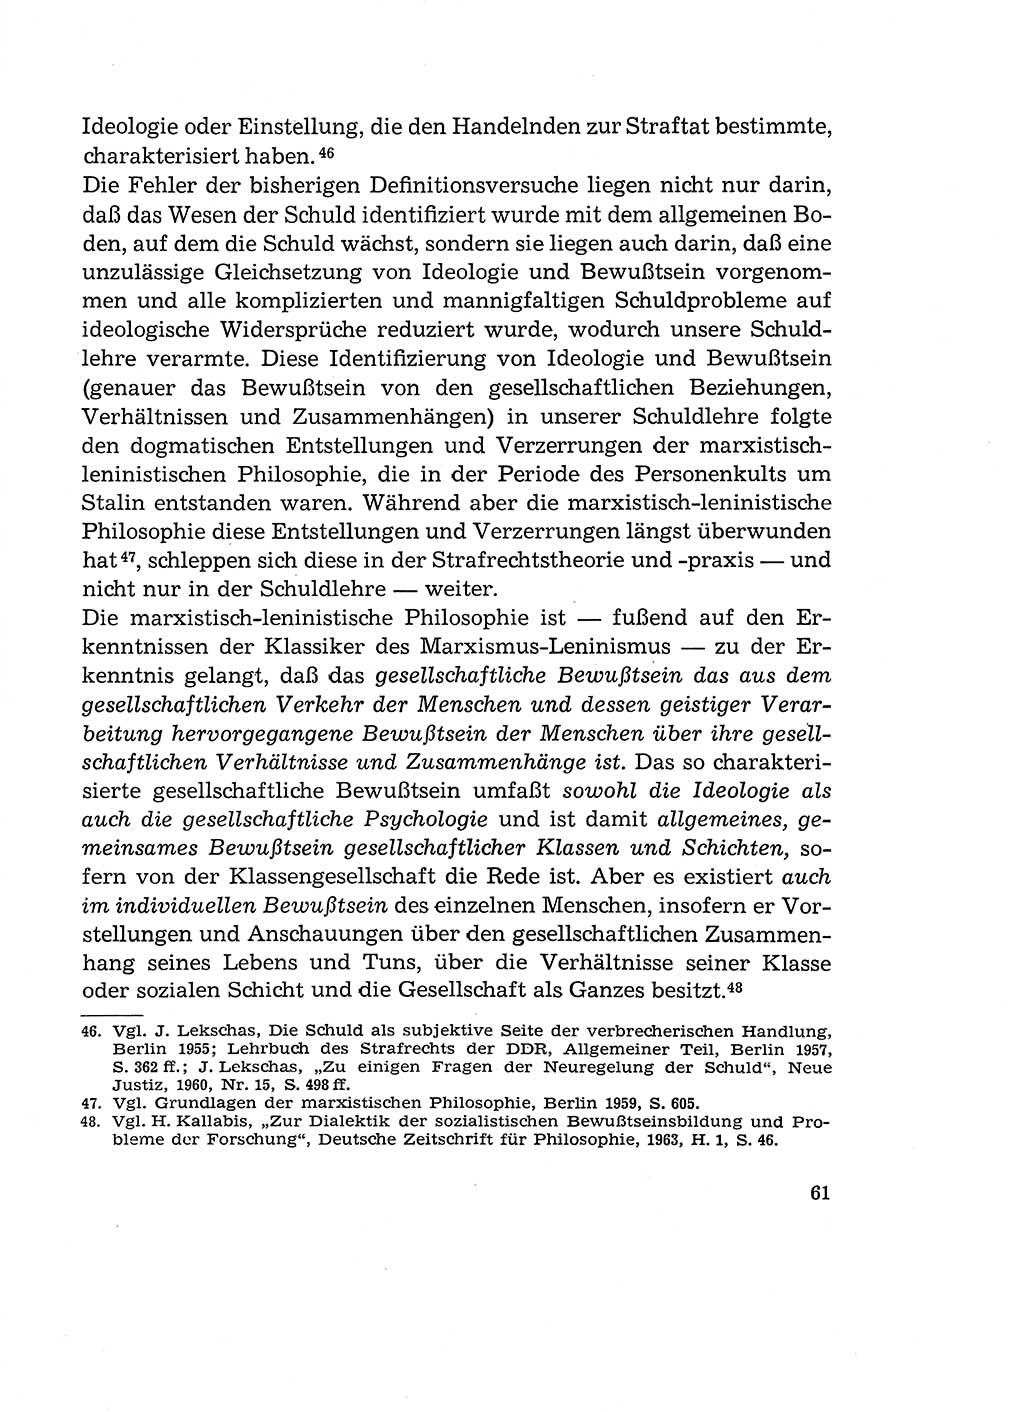 Verantwortung und Schuld im neuen Strafgesetzbuch (StGB) [Deutsche Demokratische Republik (DDR)] 1964, Seite 61 (Verantw. Sch. StGB DDR 1964, S. 61)